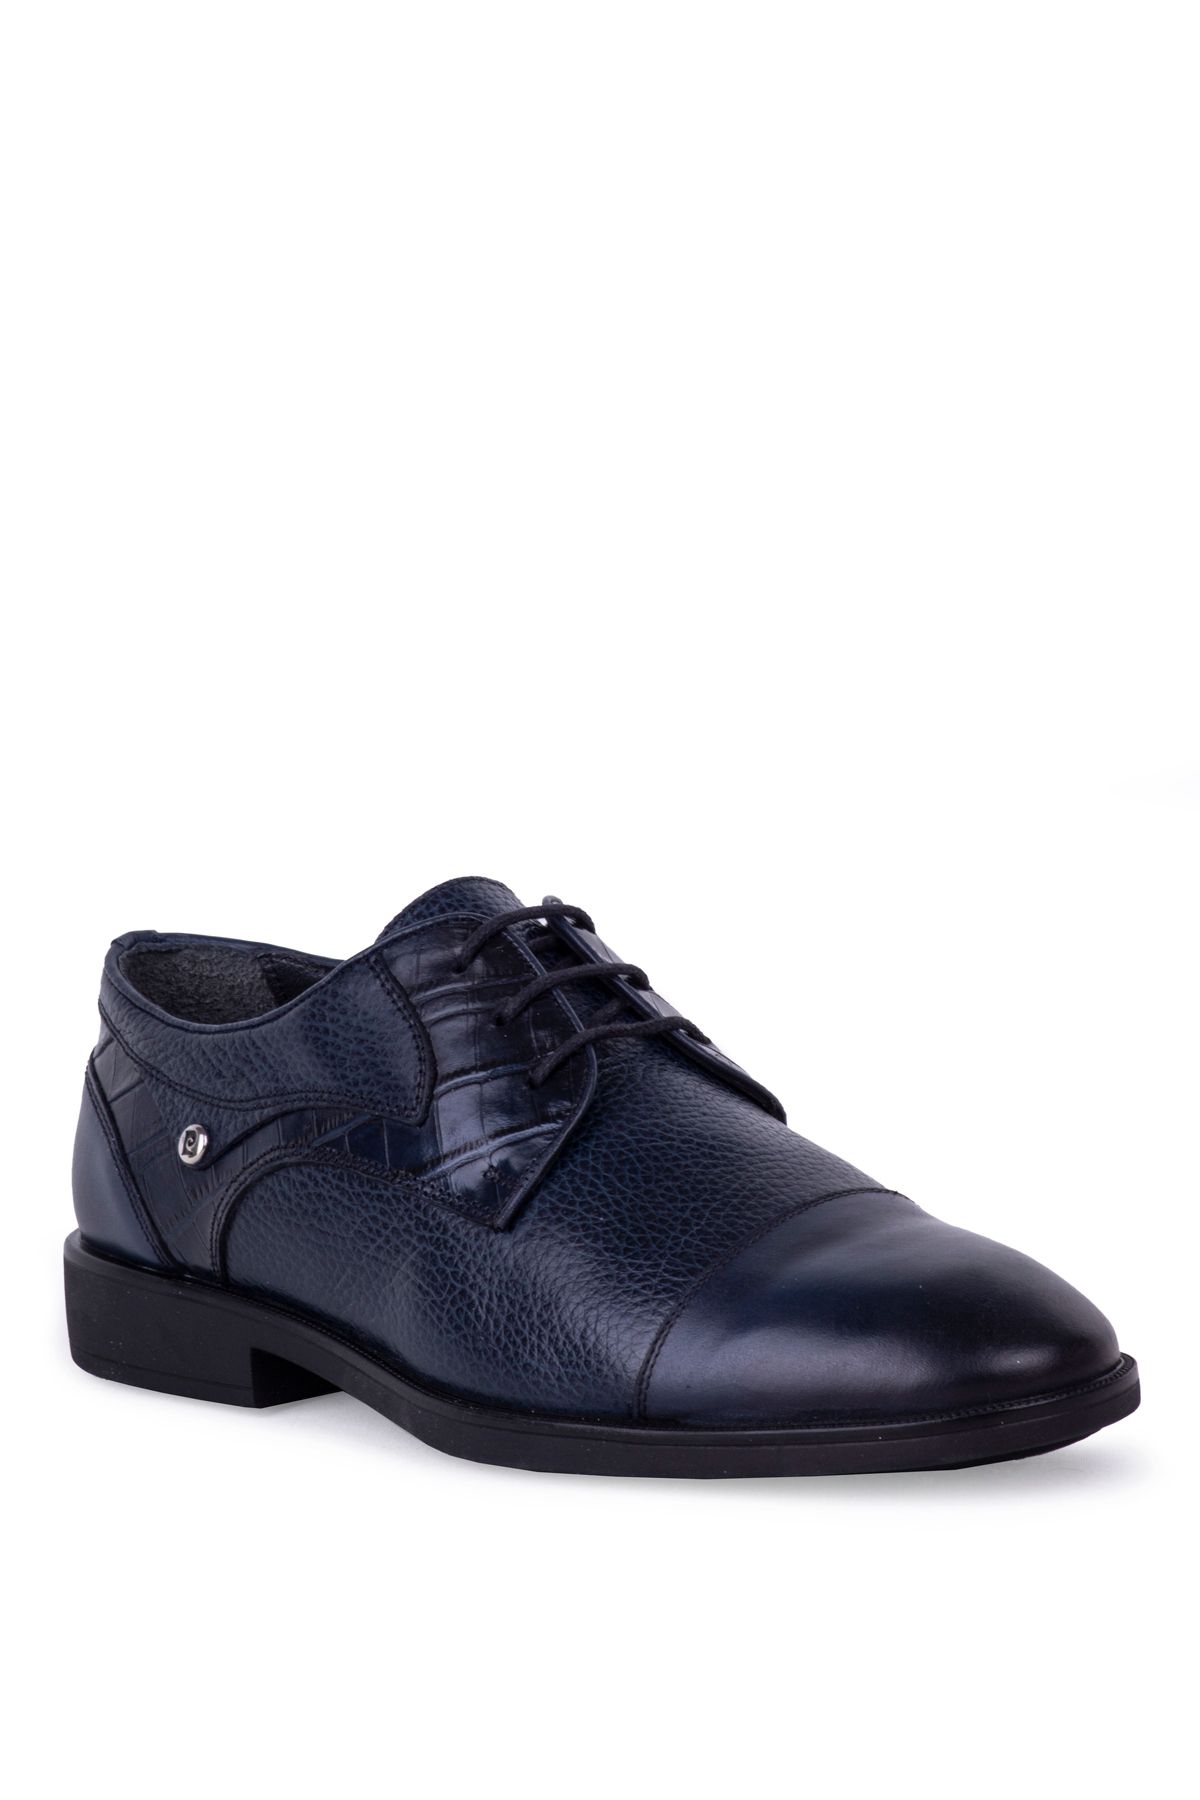 Pierre Cardin Günlük Klasik Erkek Ayakkabı 63534